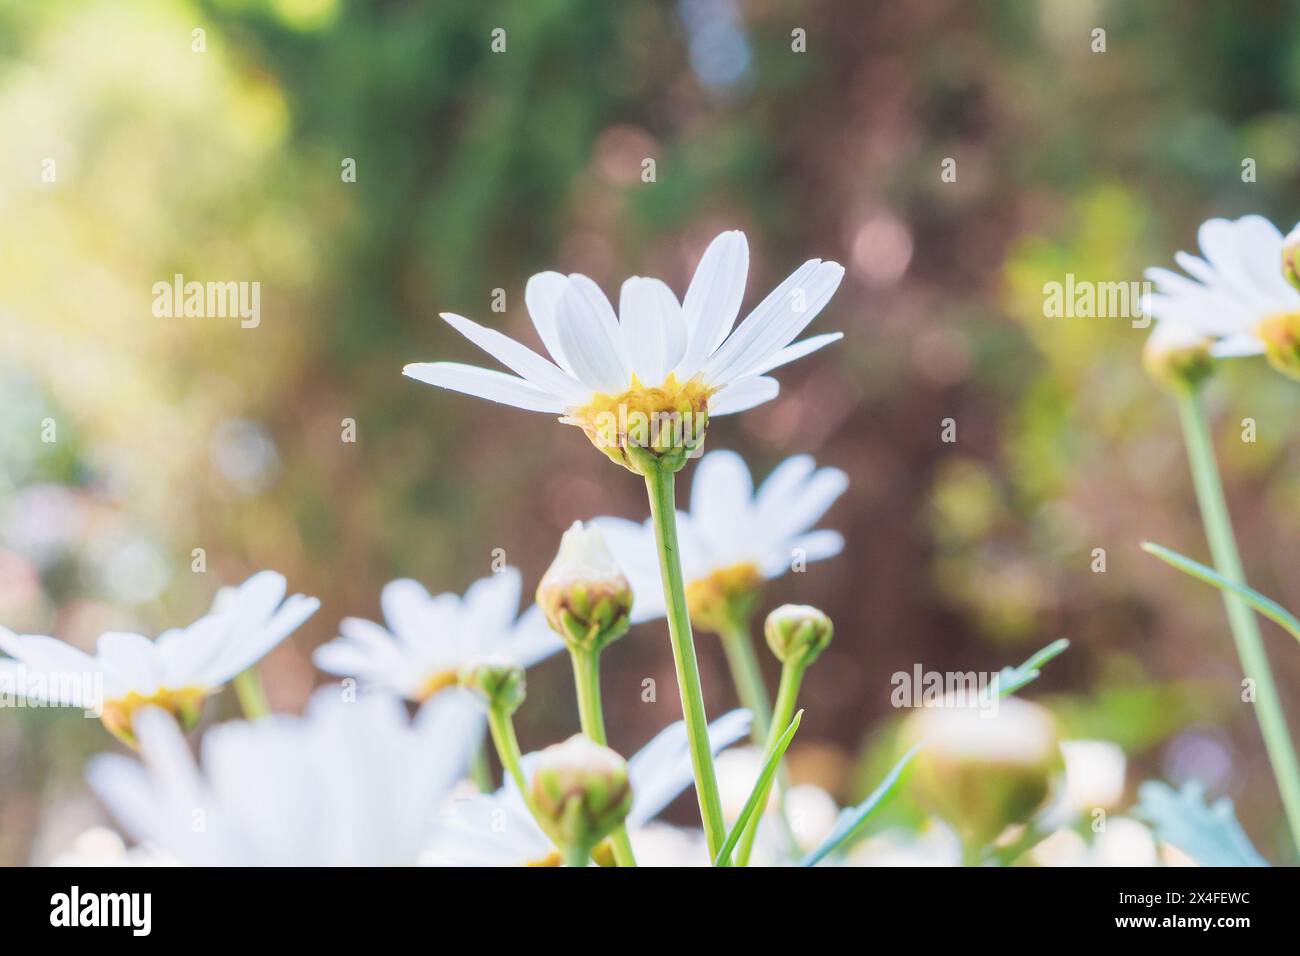 Bella bianca camomiles daisy campo dei fiori sul prato verde Foto Stock